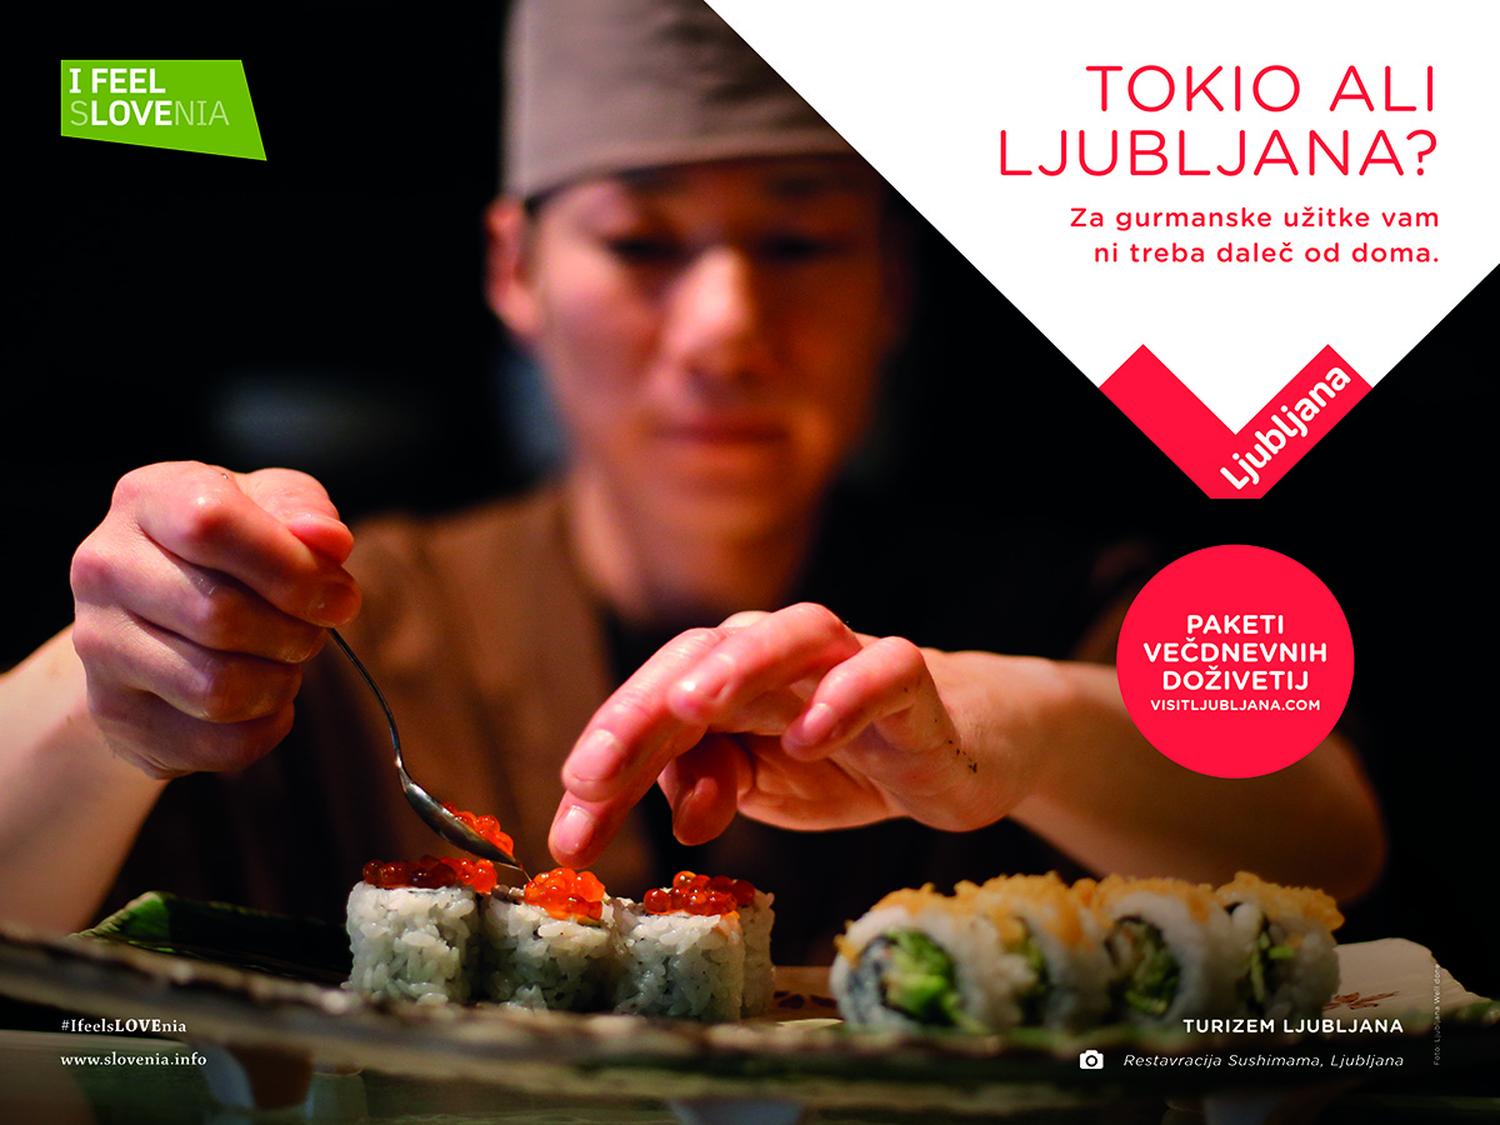 Plakat za kampanjo Turizma Ljubljana »Tujina ali Ljubljana?«; na fotografiji kuharski mojster, ki je pripravil japonsko jed.